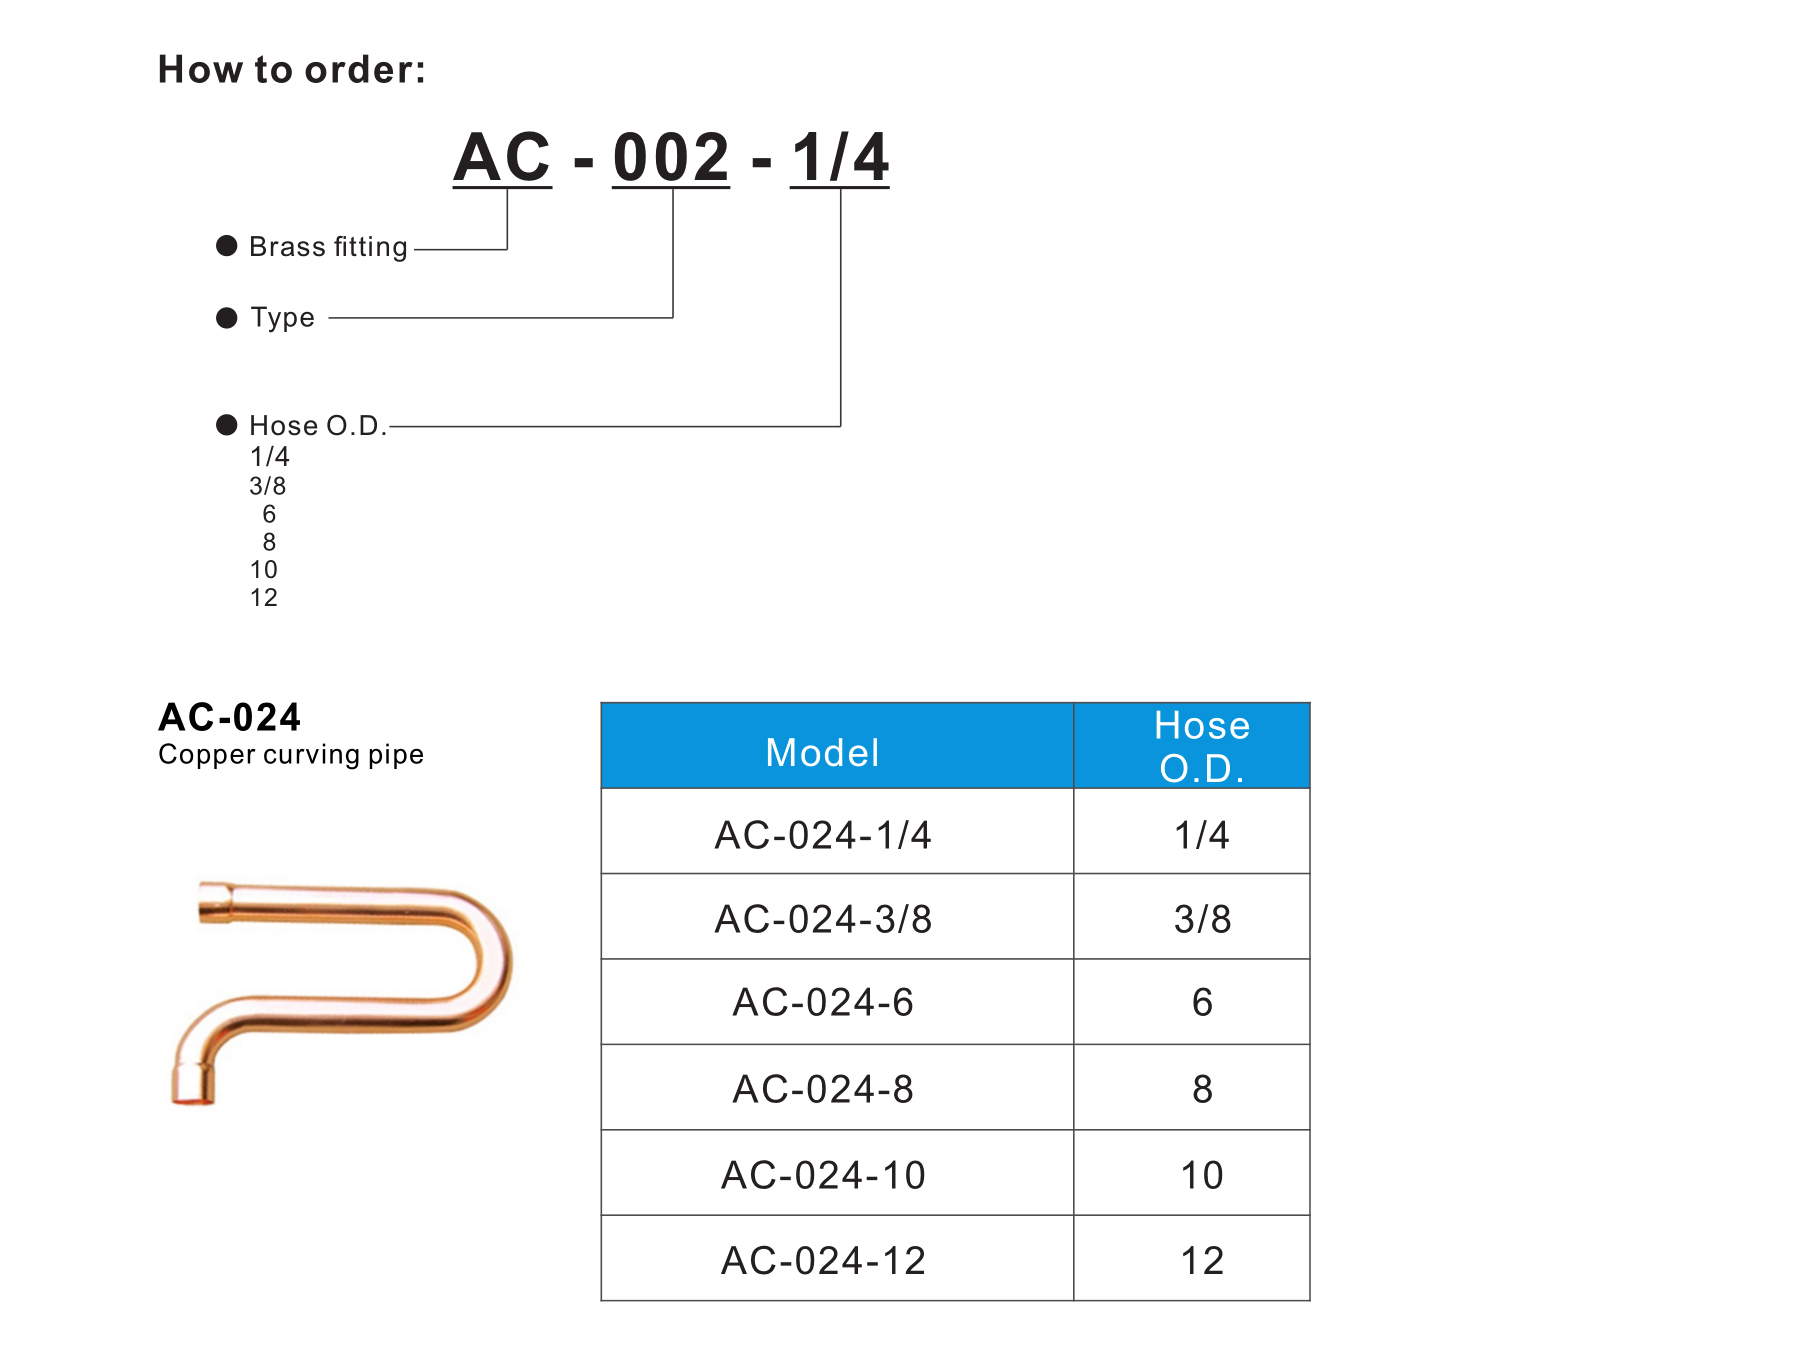 AC-024 Copper curving pipe